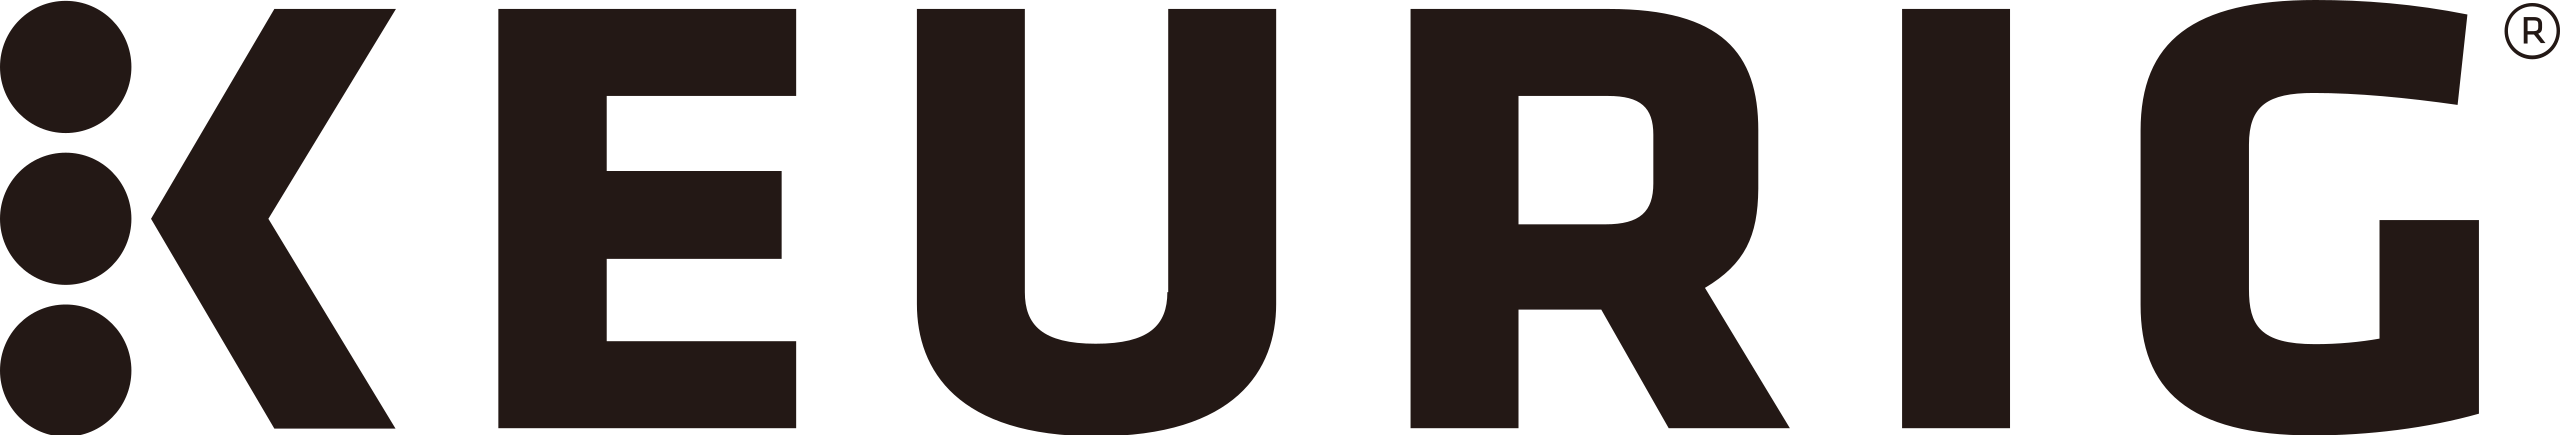 Keurig_logo